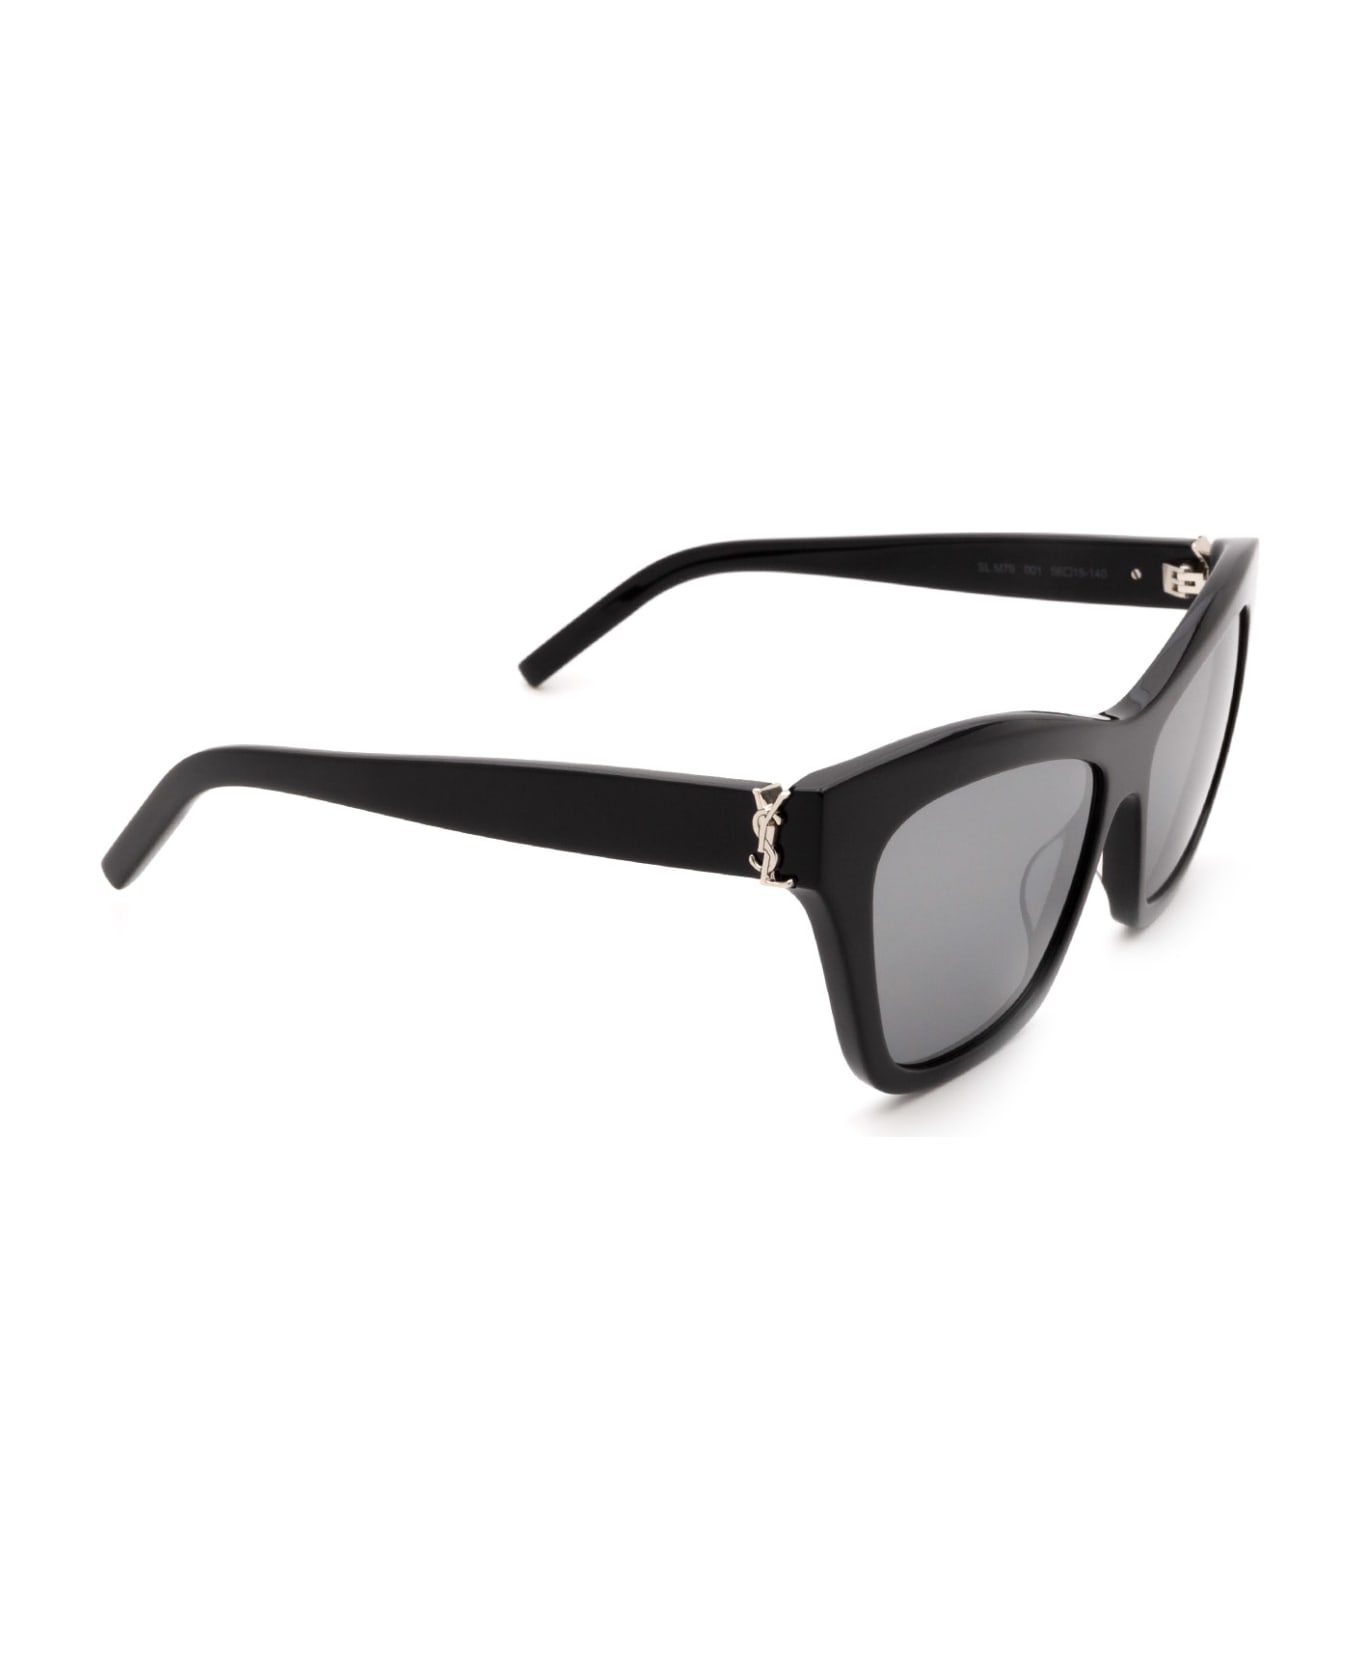 Saint Laurent Eyewear Sl M79 Black Sunglasses - Black